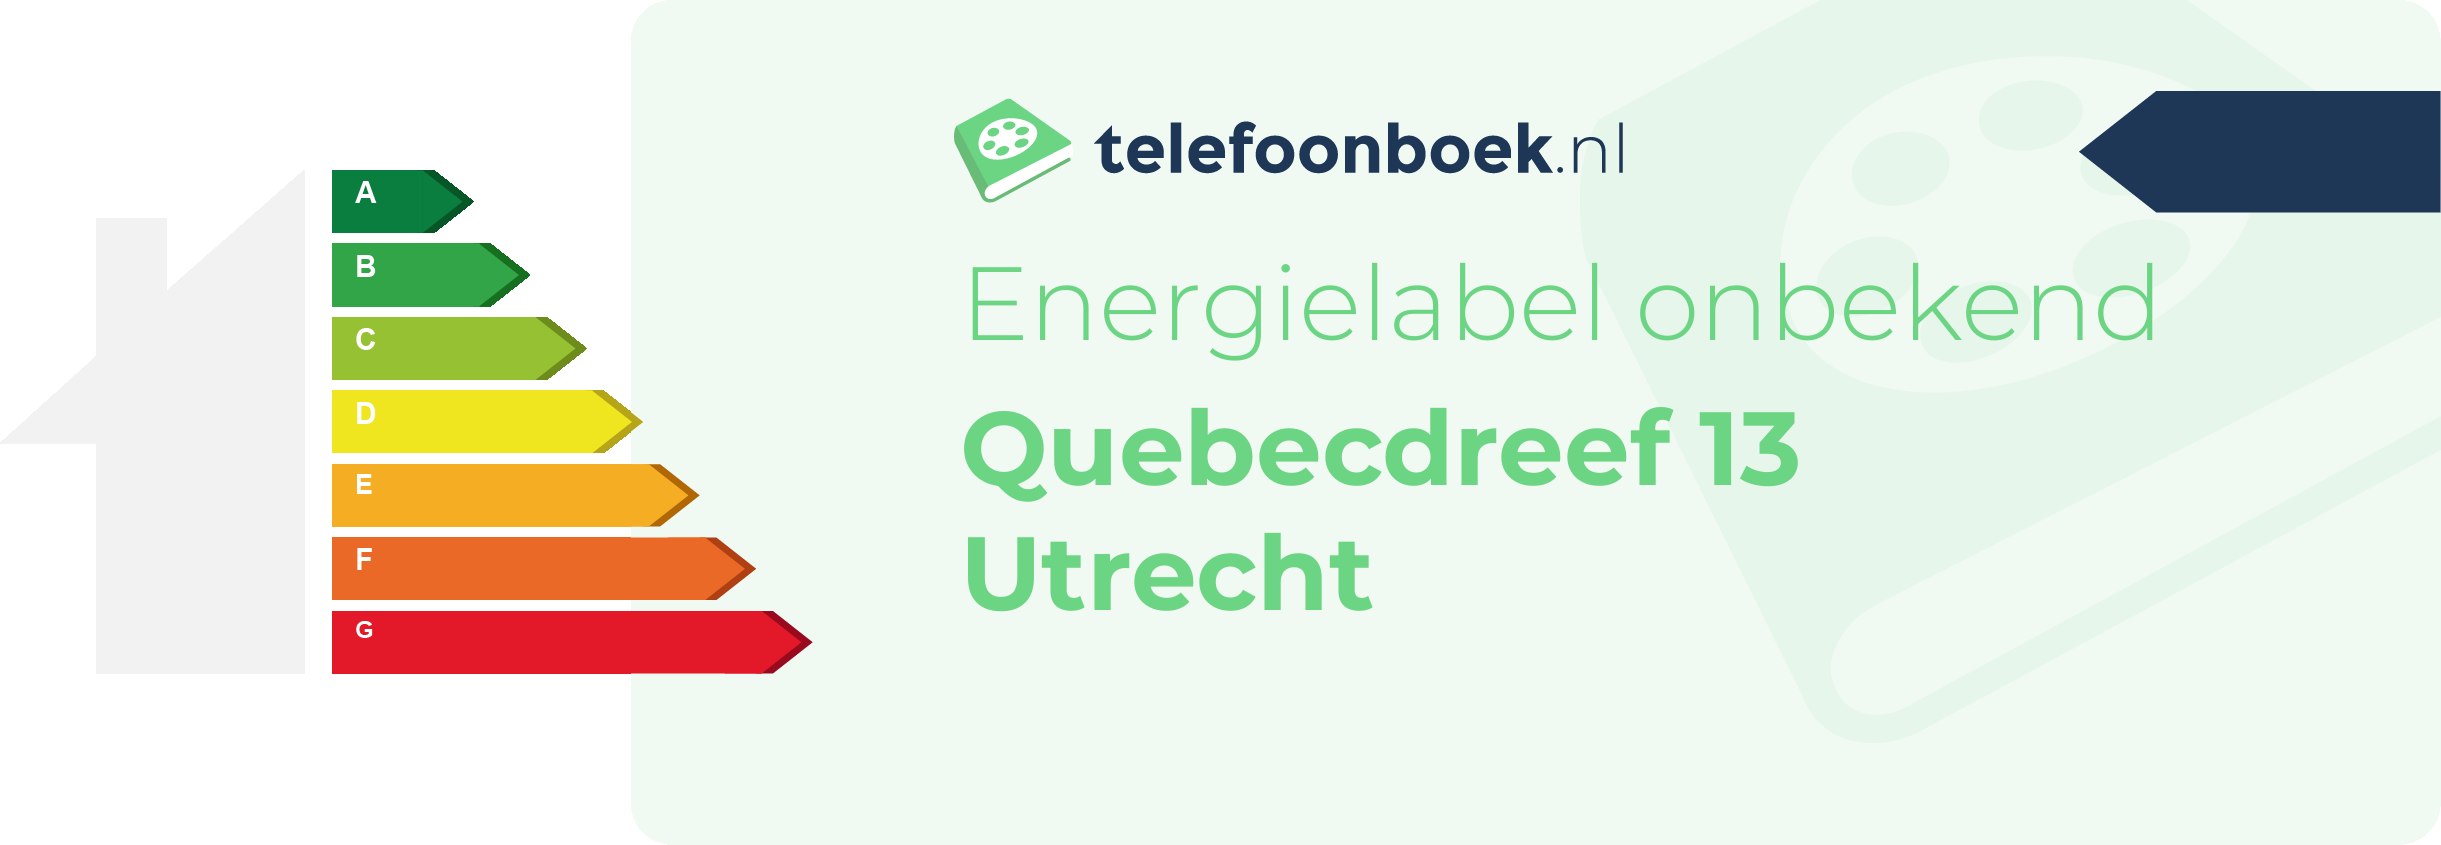 Energielabel Quebecdreef 13 Utrecht